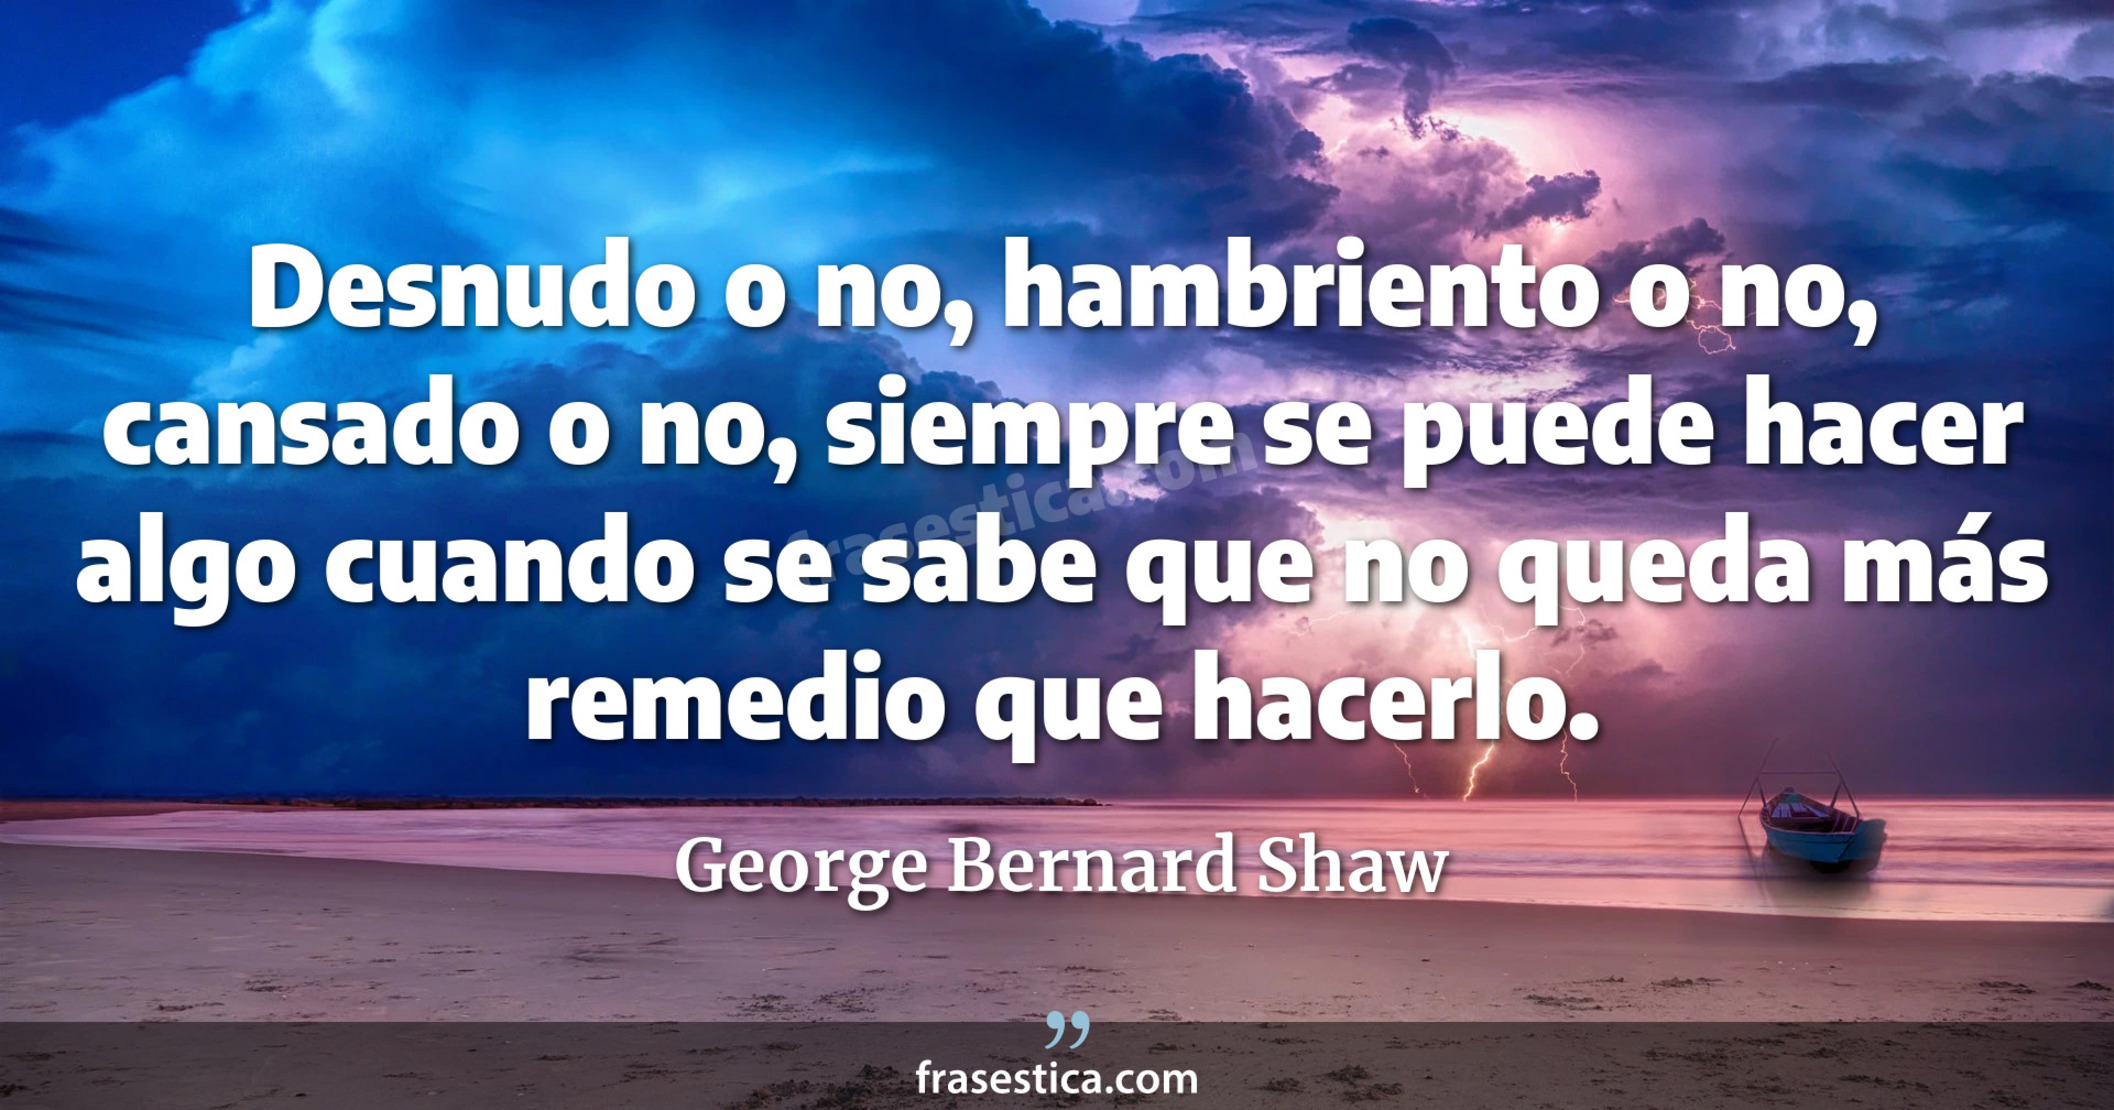 Desnudo o no, hambriento o no, cansado o no, siempre se puede hacer algo cuando se sabe que no queda más remedio que hacerlo. - George Bernard Shaw